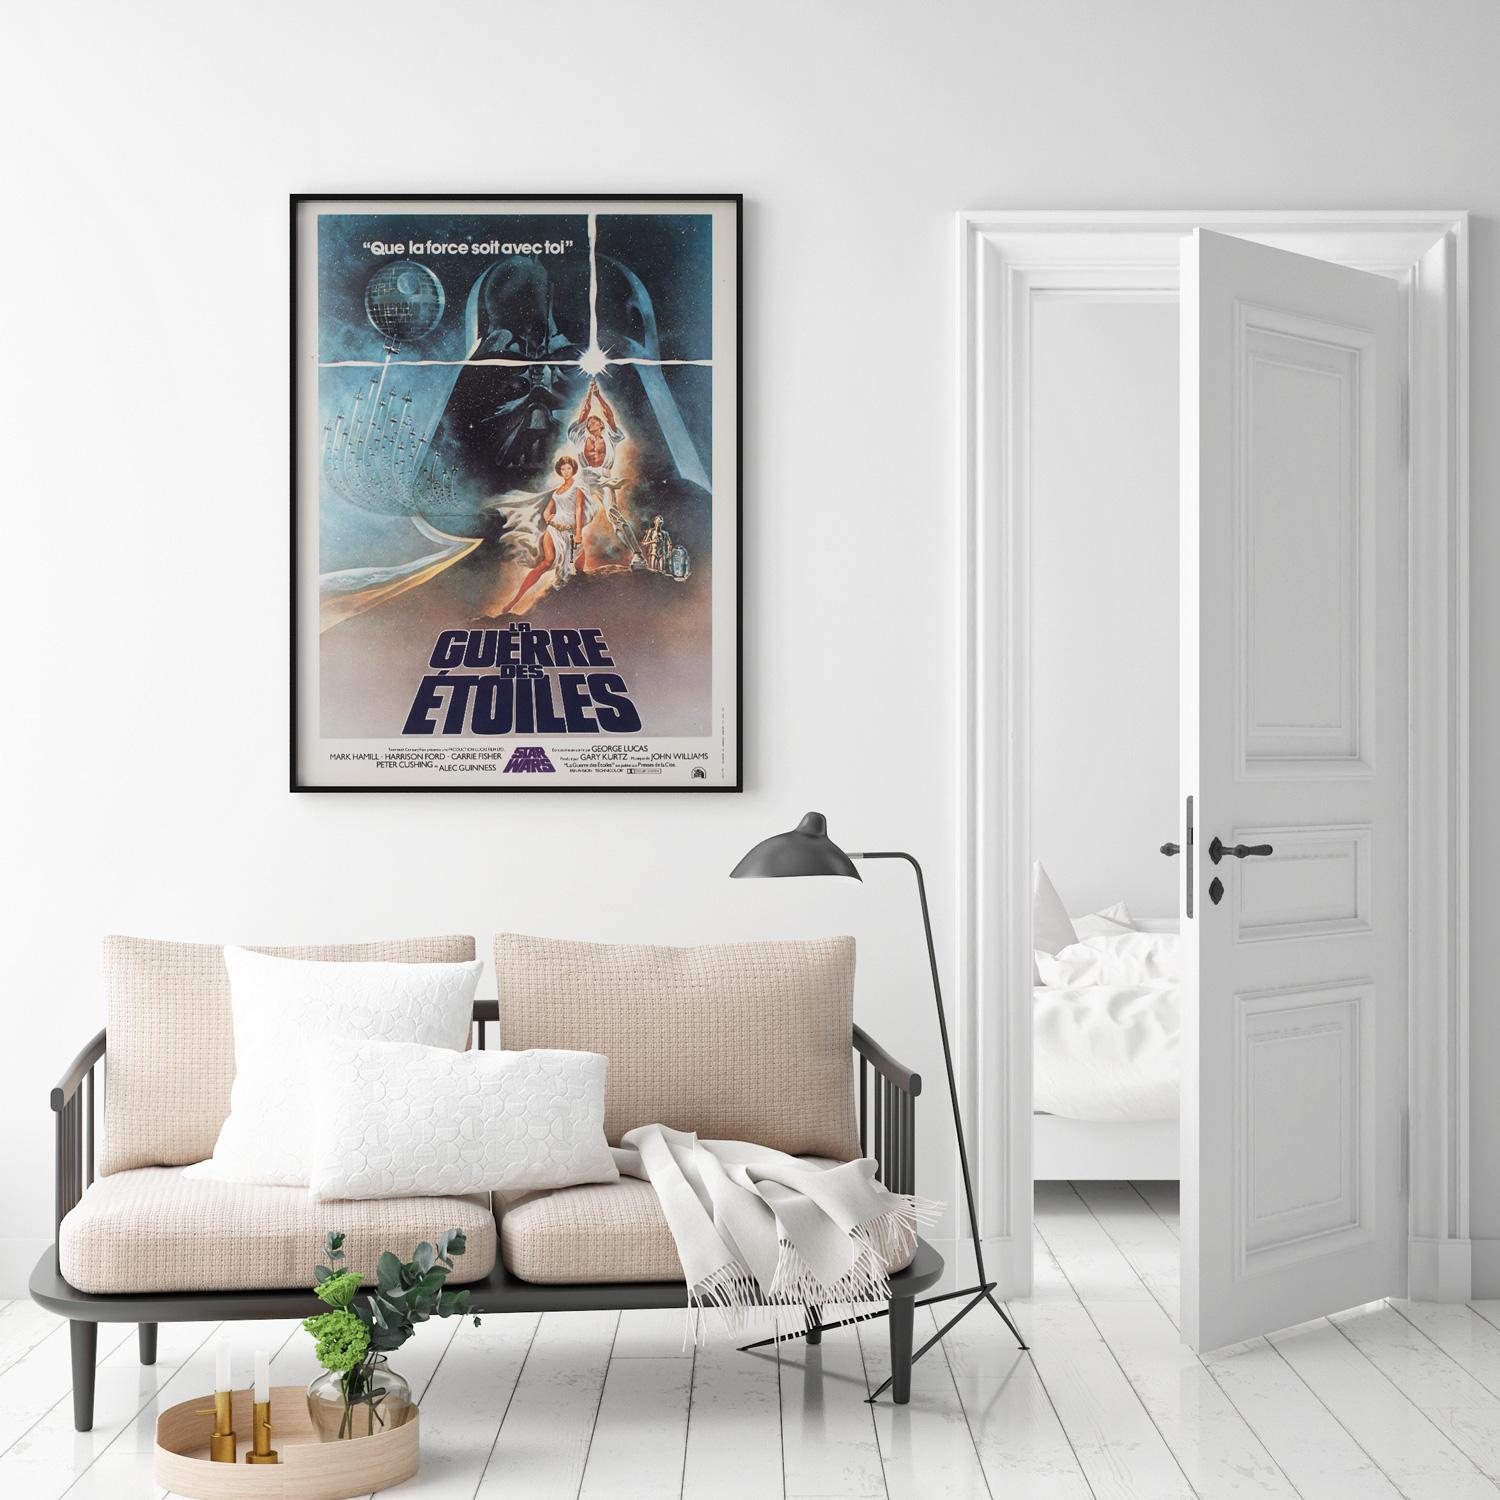 Fantastique affiche du film La Guerre des étoiles, première année de diffusion en France, réalisée par la Moyenne française et reprenant le dessin classique de Tom Jung. Dans un magnifique état proche de Mint/Mint à dos de lin.

Cette affiche de